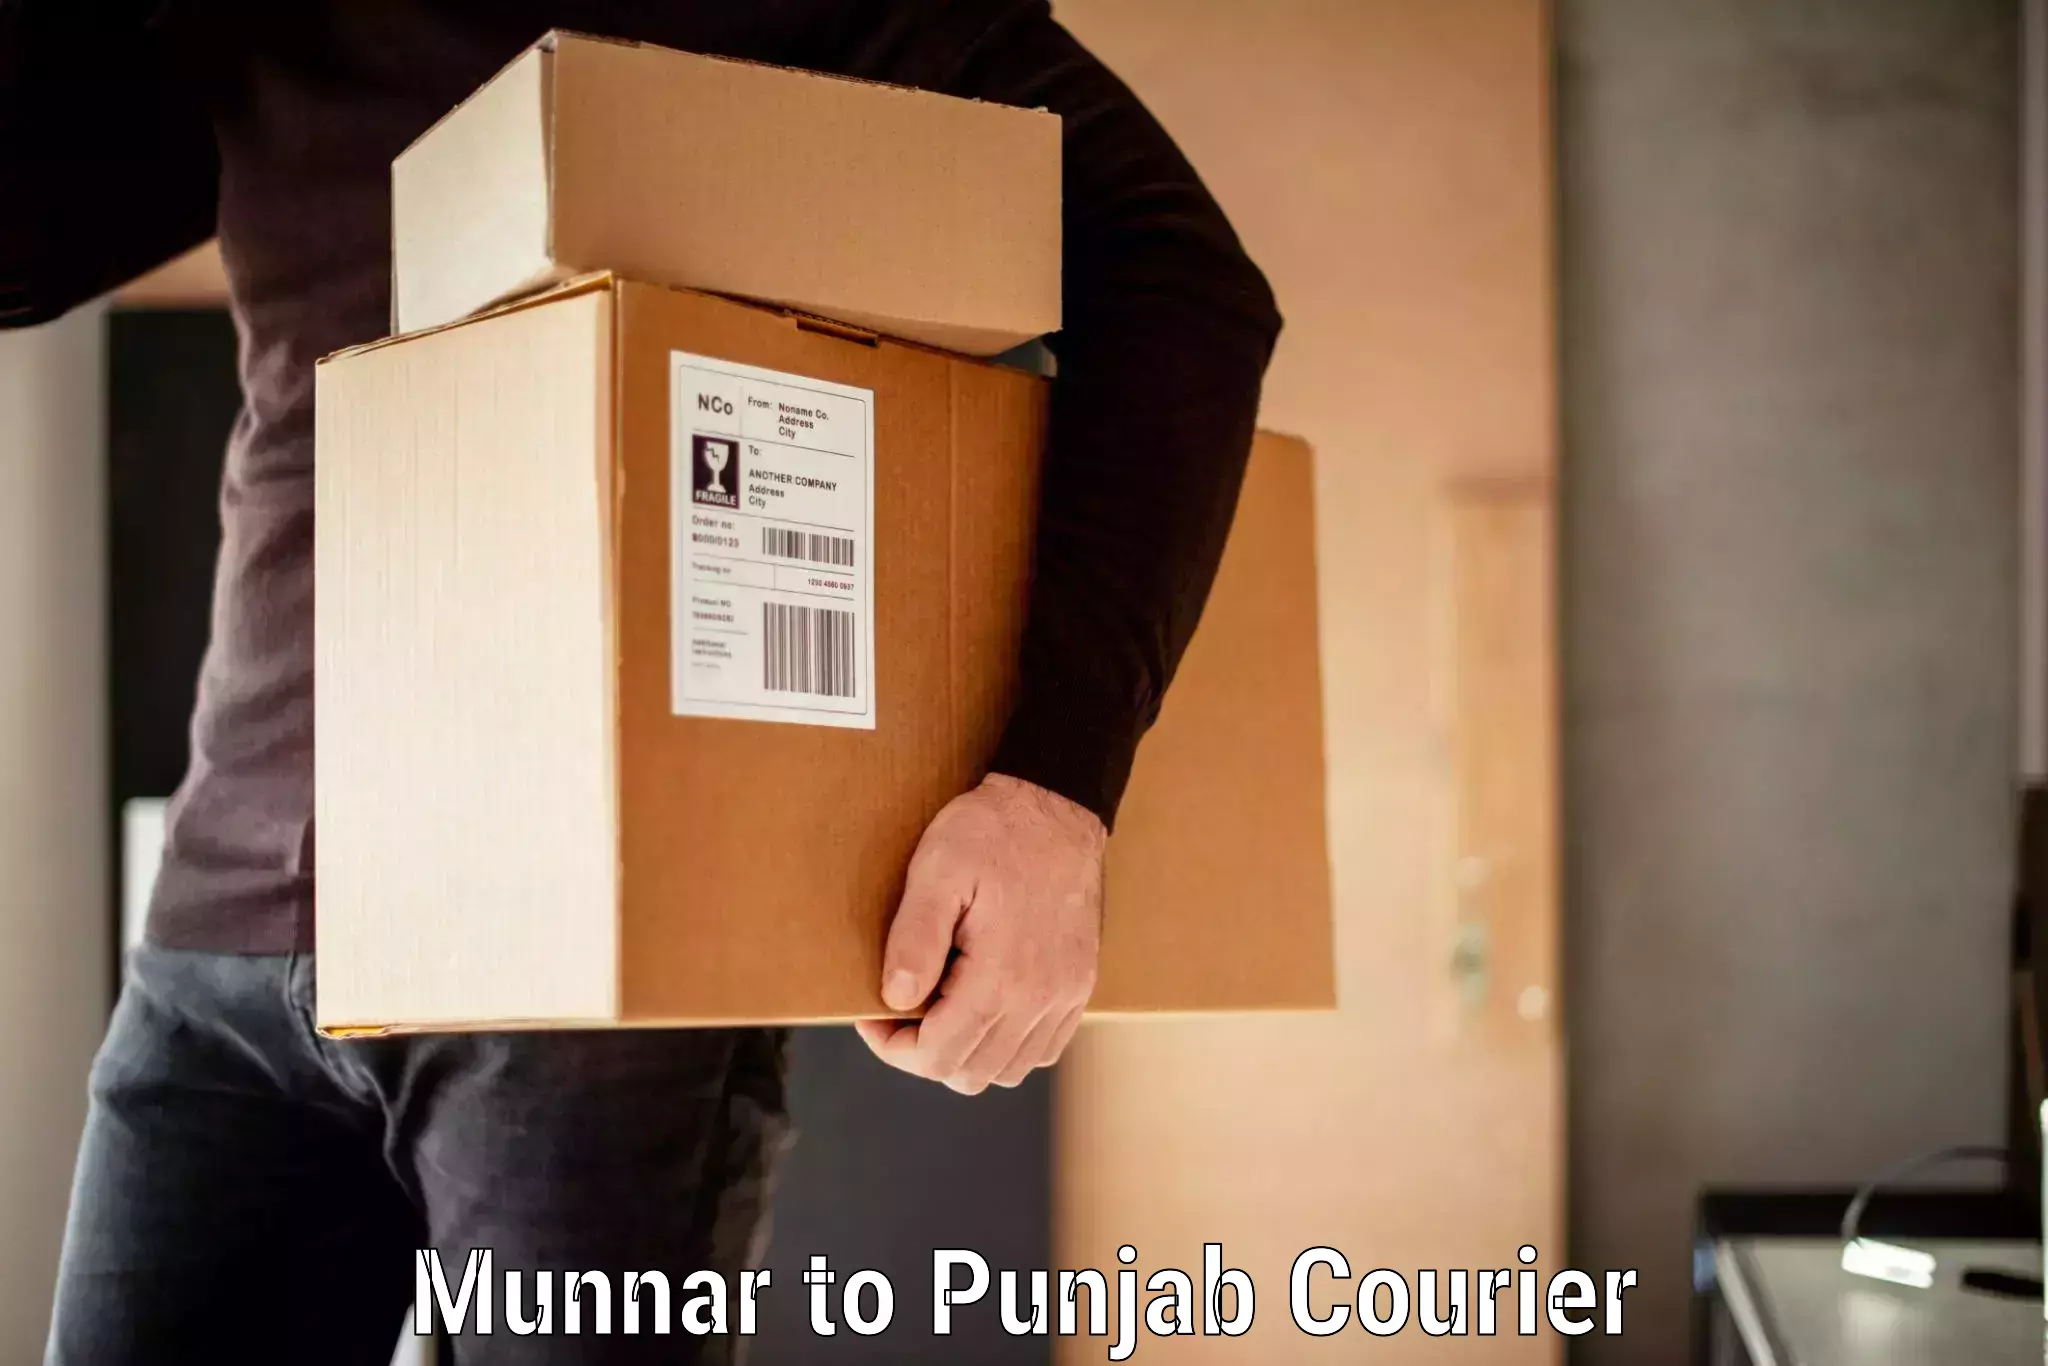 Baggage transport management Munnar to Punjab